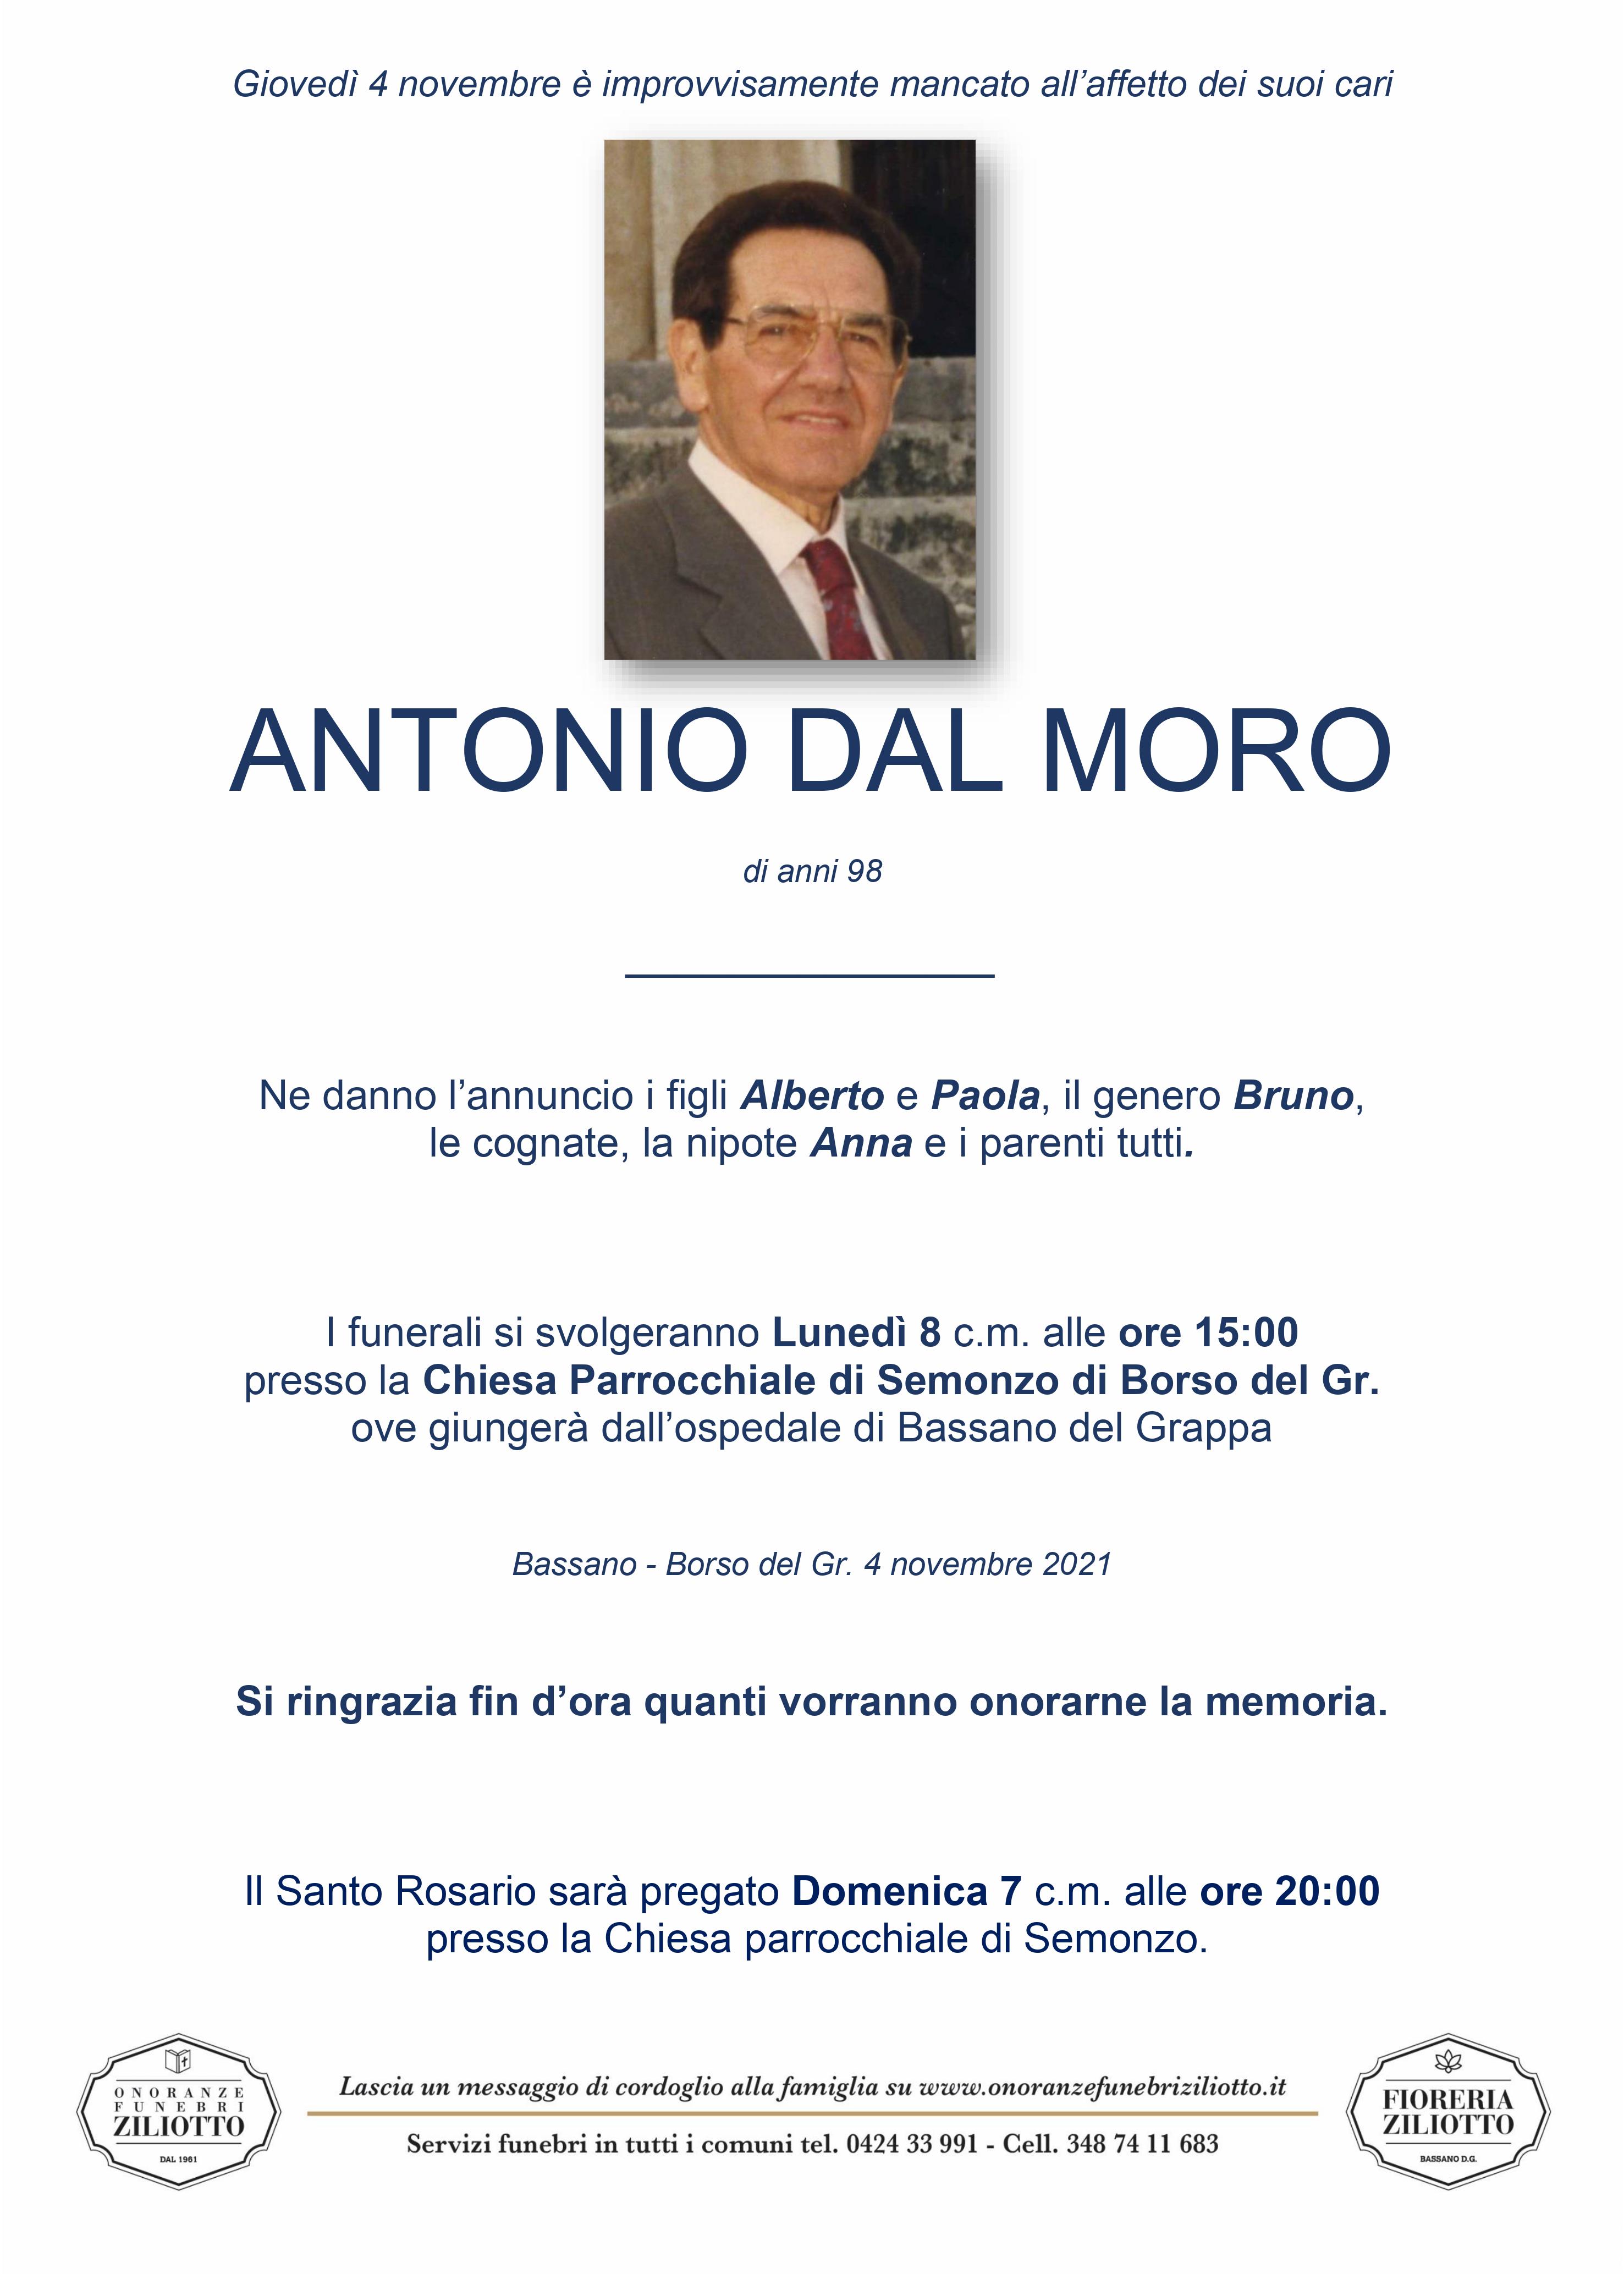 Antonio Dal Moro - 98 anni - Bassano del Grappa